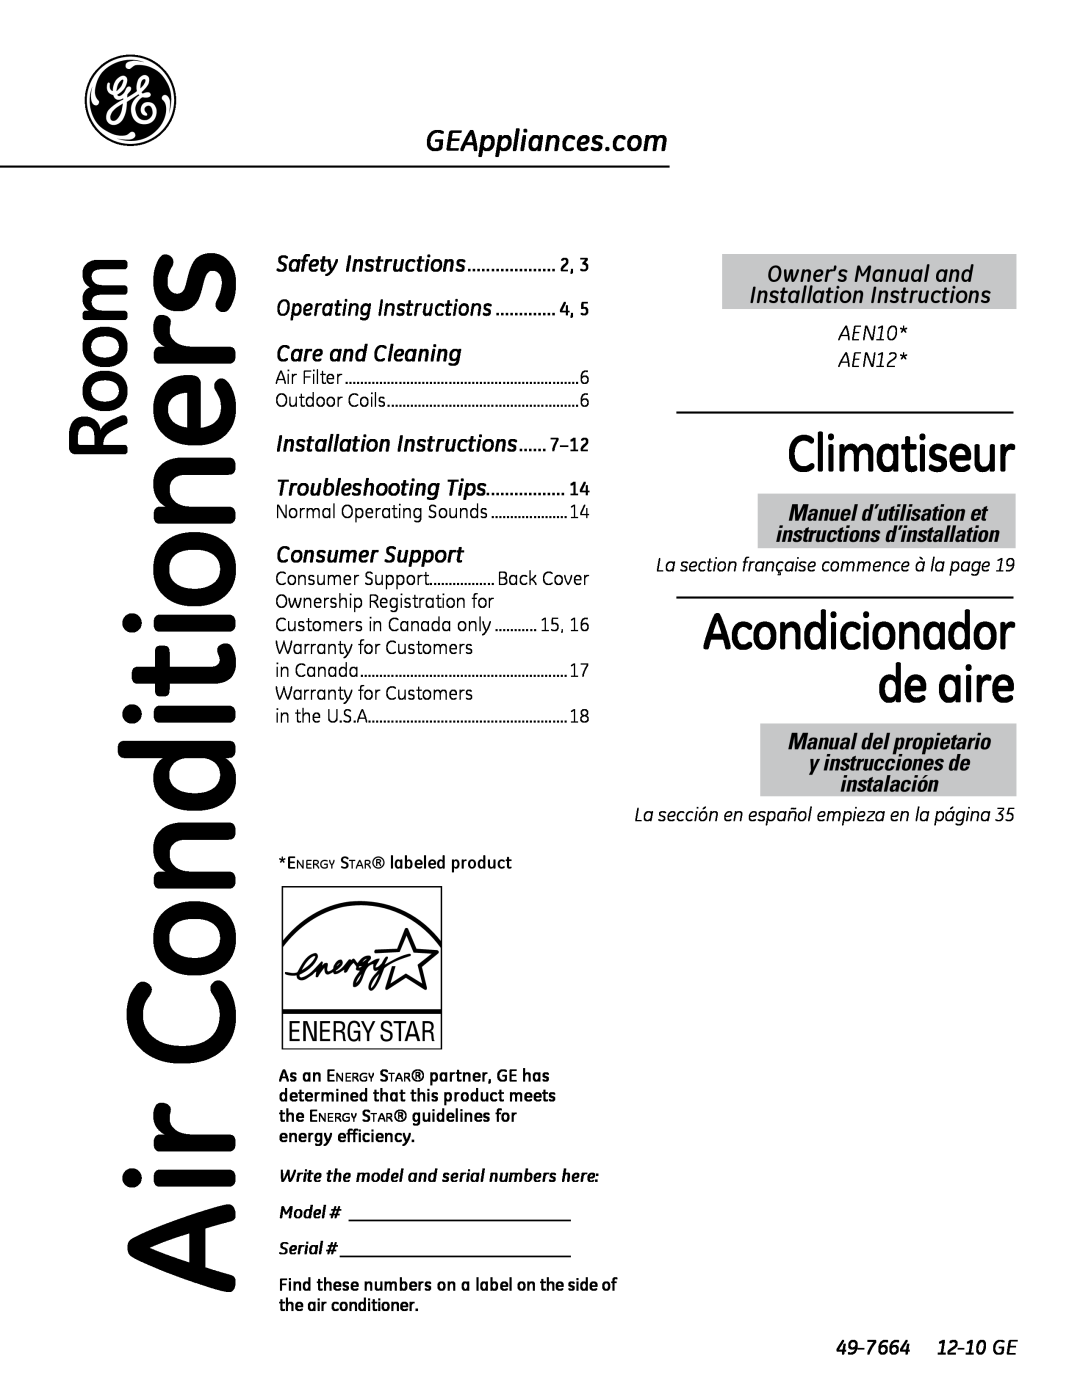 GE 880 installation instructions AEN10 AEN12, 49-7664 12-10GE, Climatiseur, Acondicionador de aire, Room, Consumer Support 